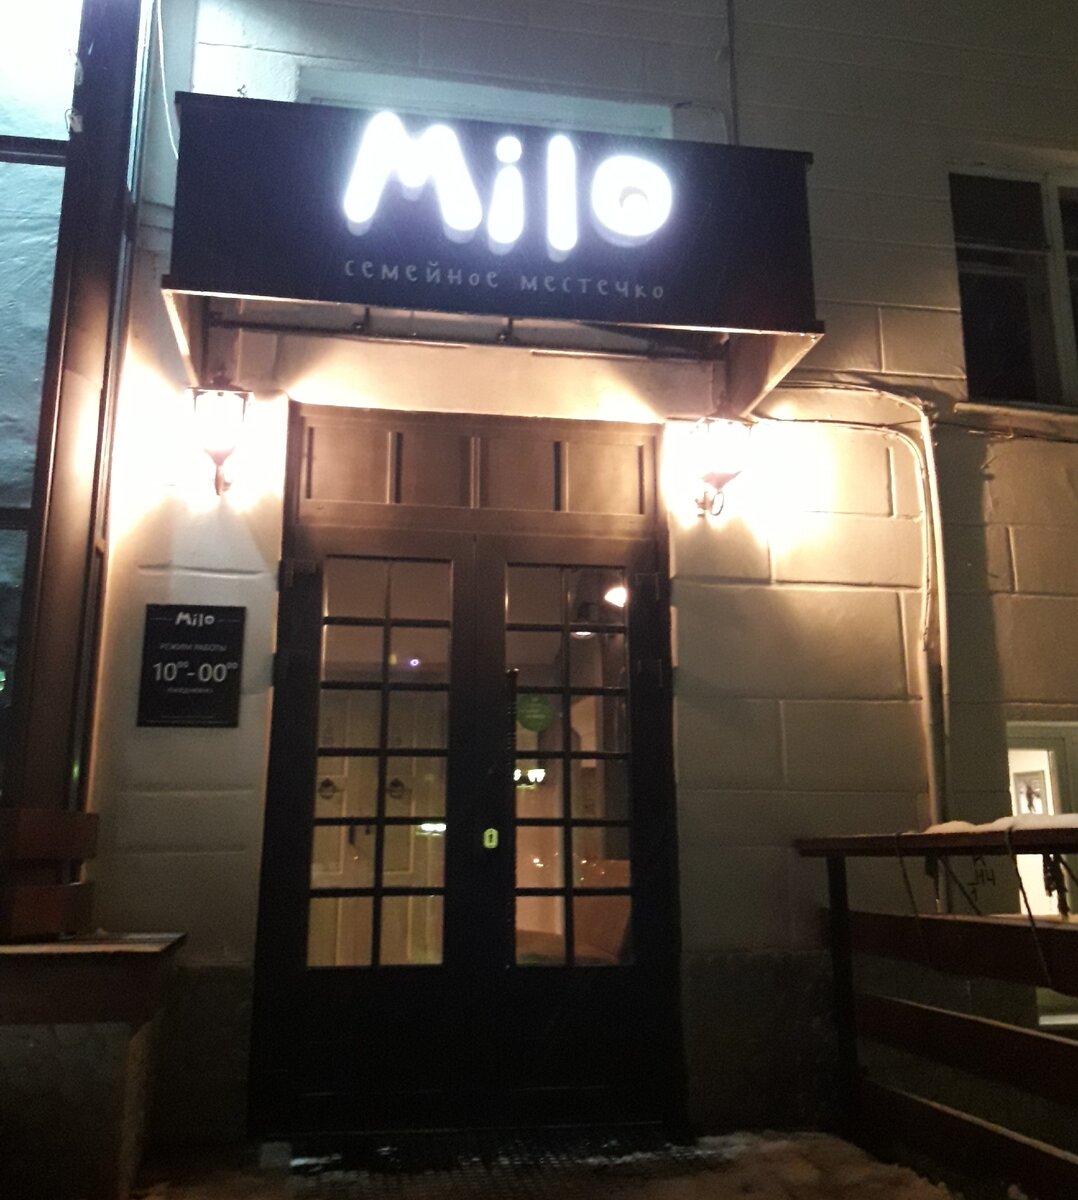 Поужинали в кафе Milo, что находится в Чувашии (Чебоксары), показываю как здесь красиво и наш чек с ценою